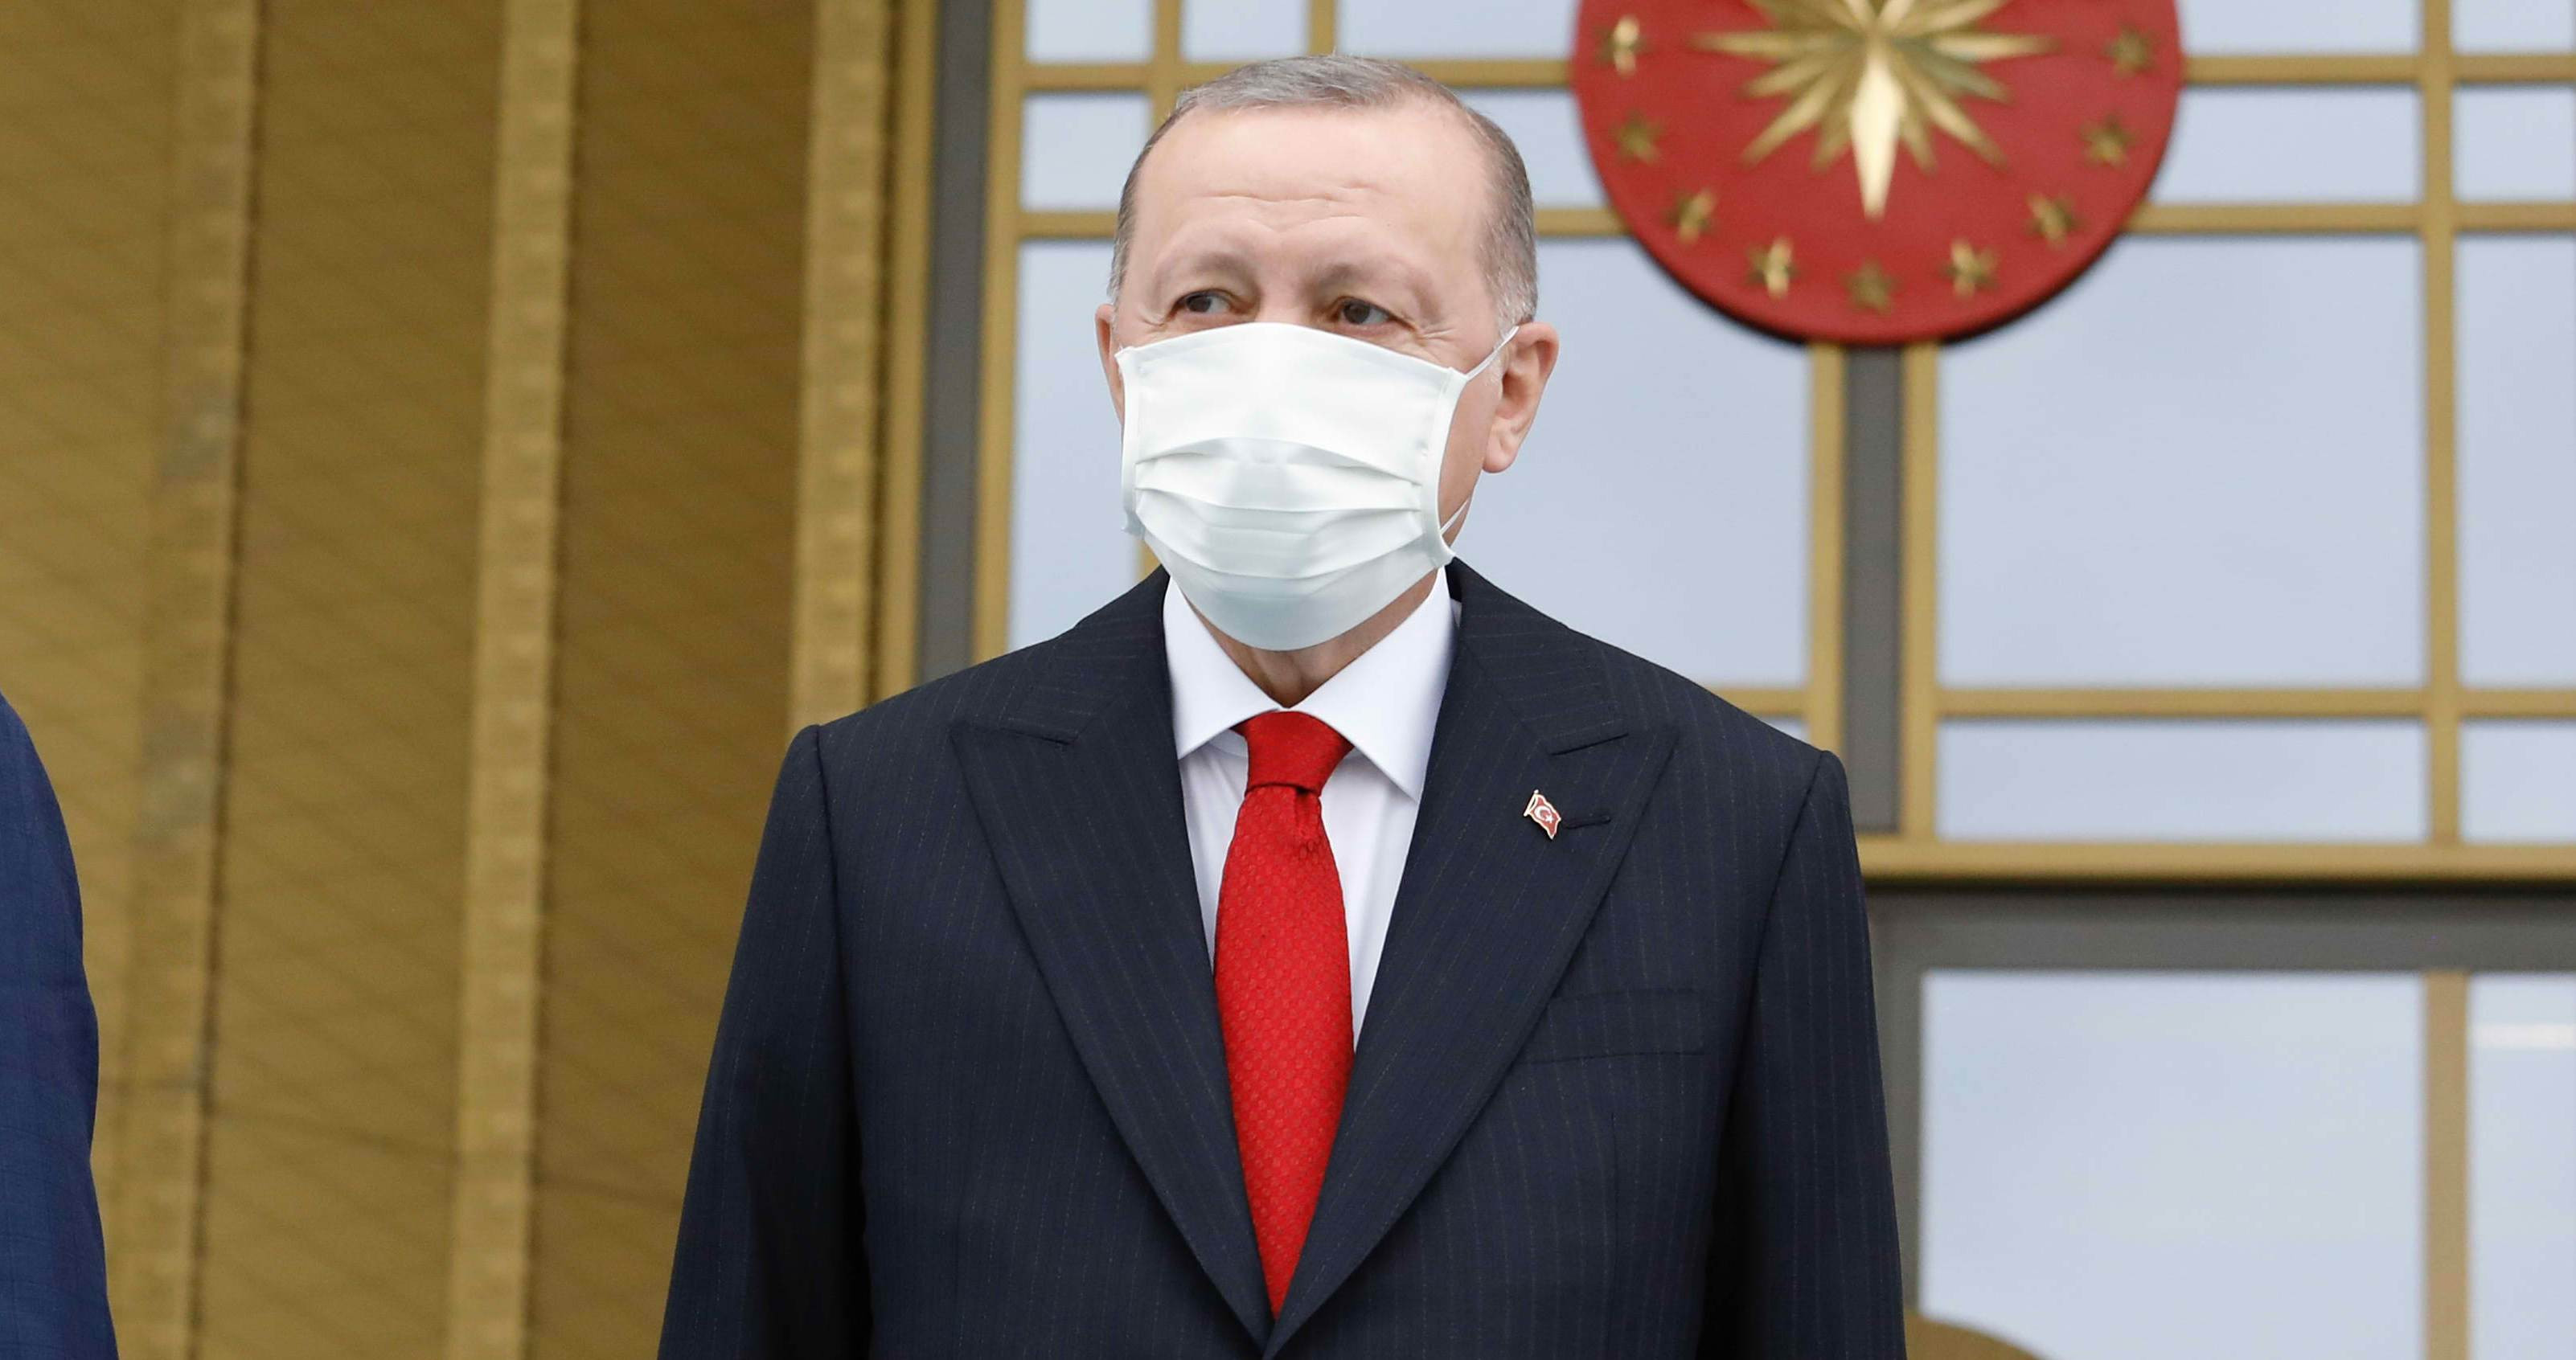 Τέρμα στα σενάρια πρόωρων εκλογών στην Τουρκία βάζει ο Ερντογάν